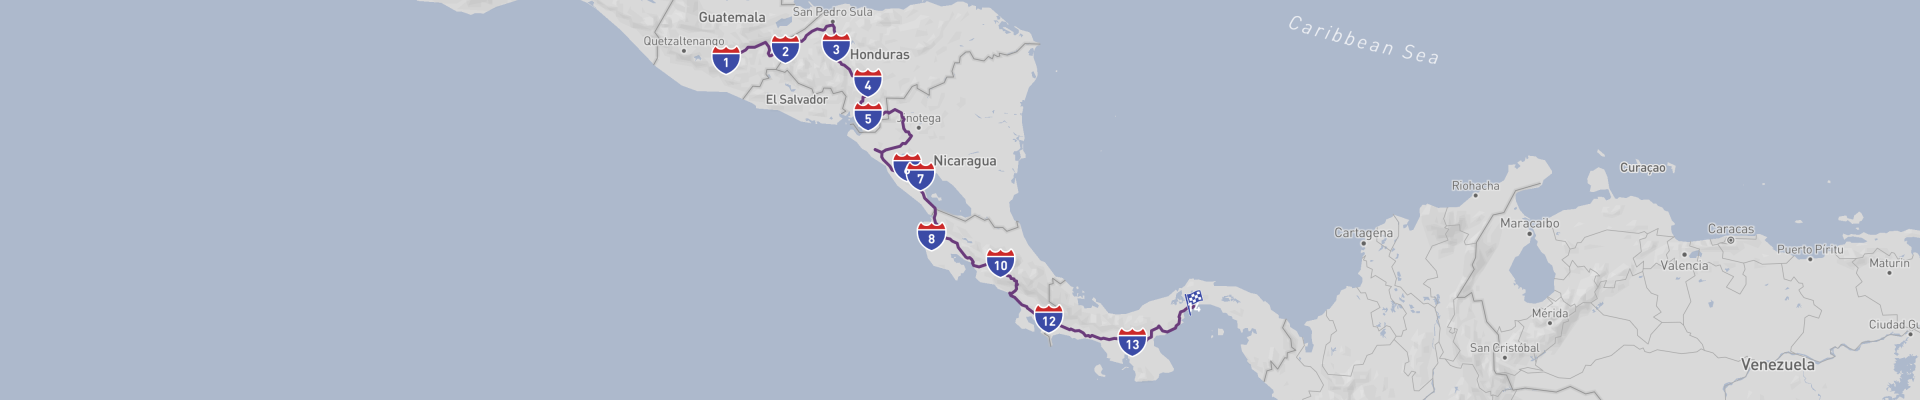 Viaje clásico por carretera a través de América Central